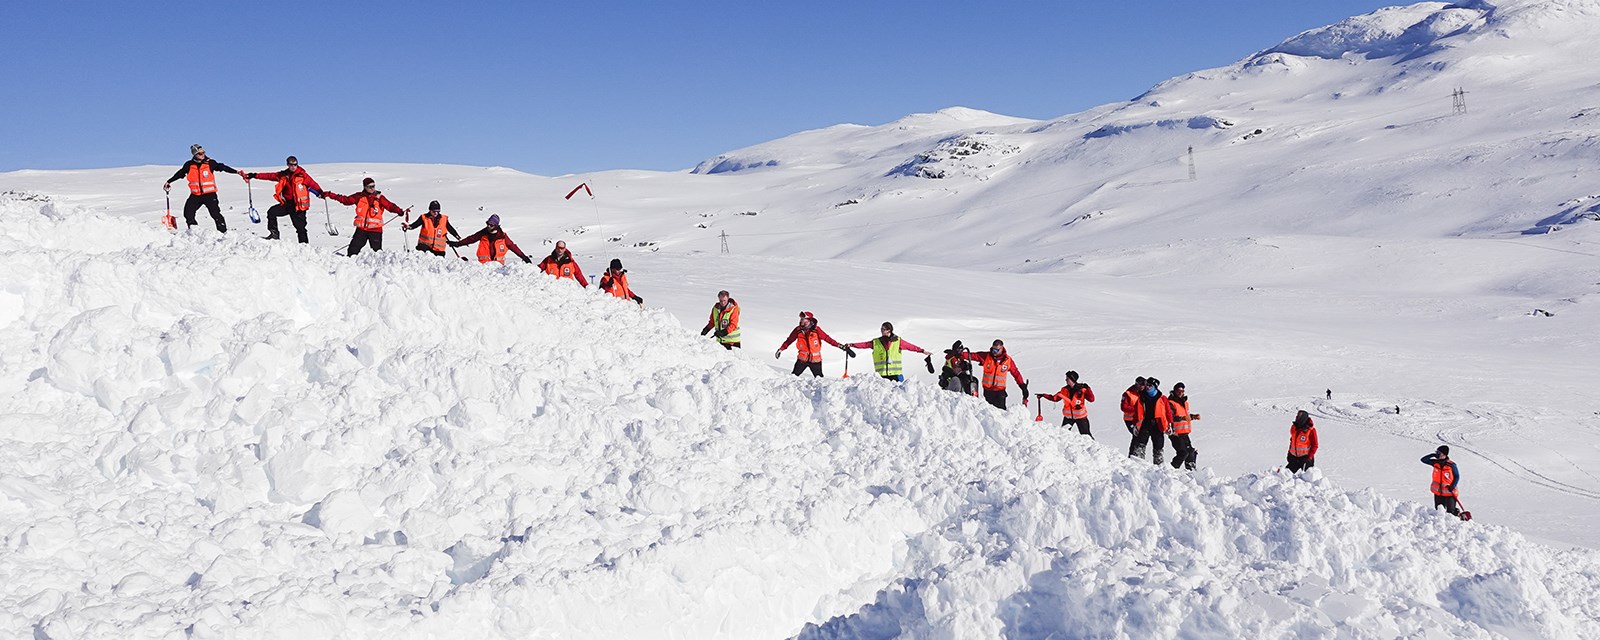 hjelpekorpsere på rekke i snøen